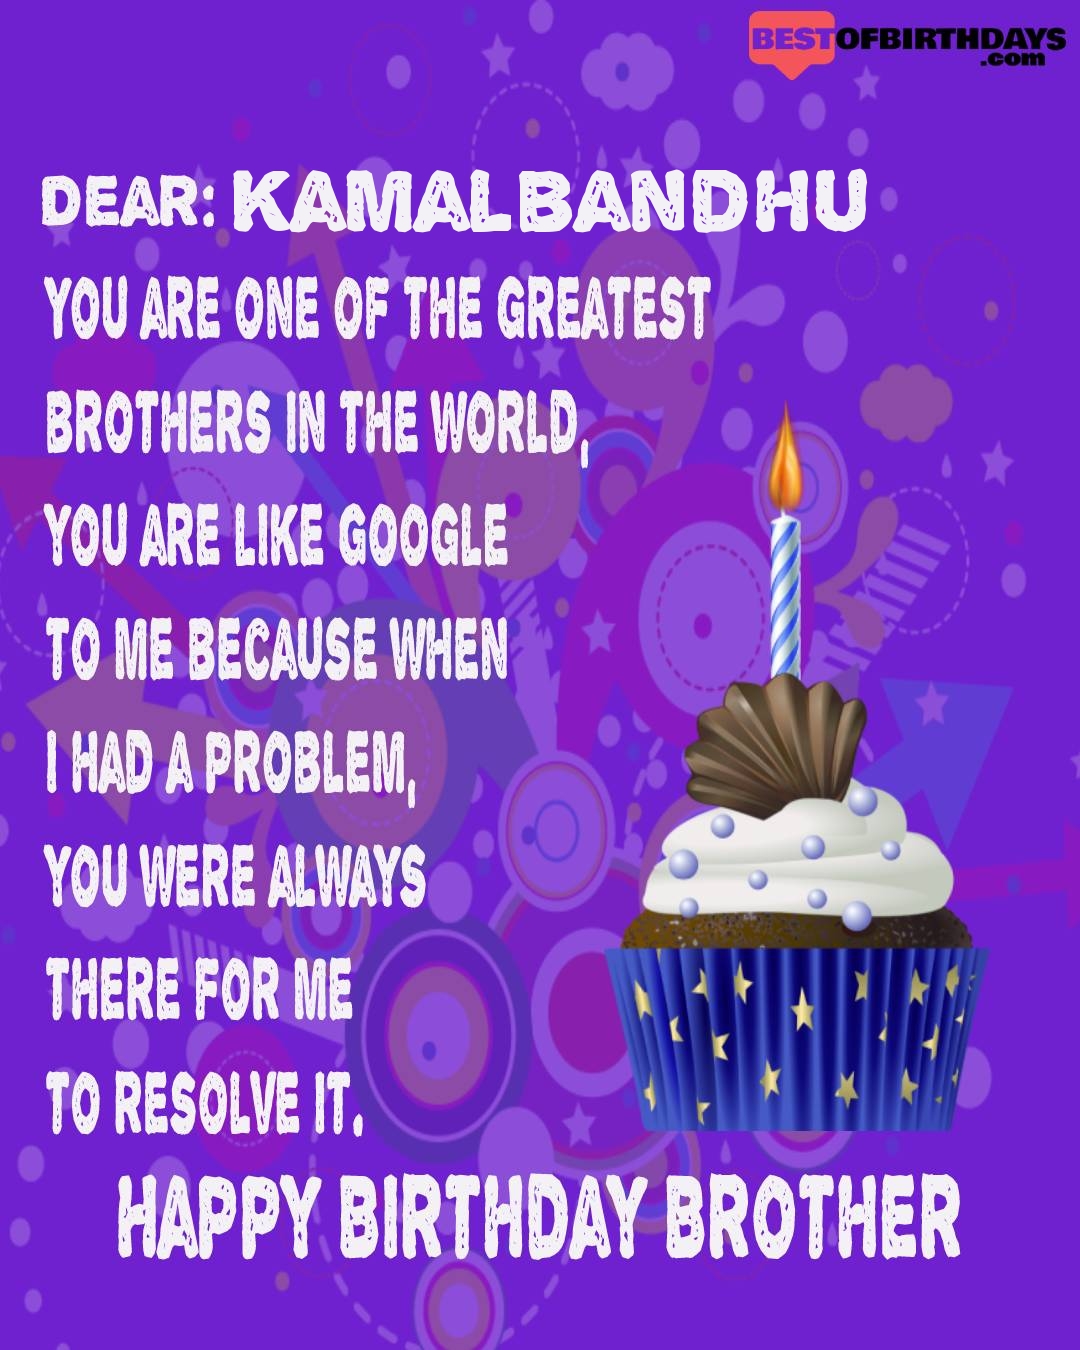 Happy birthday kamalbandhu bhai brother bro